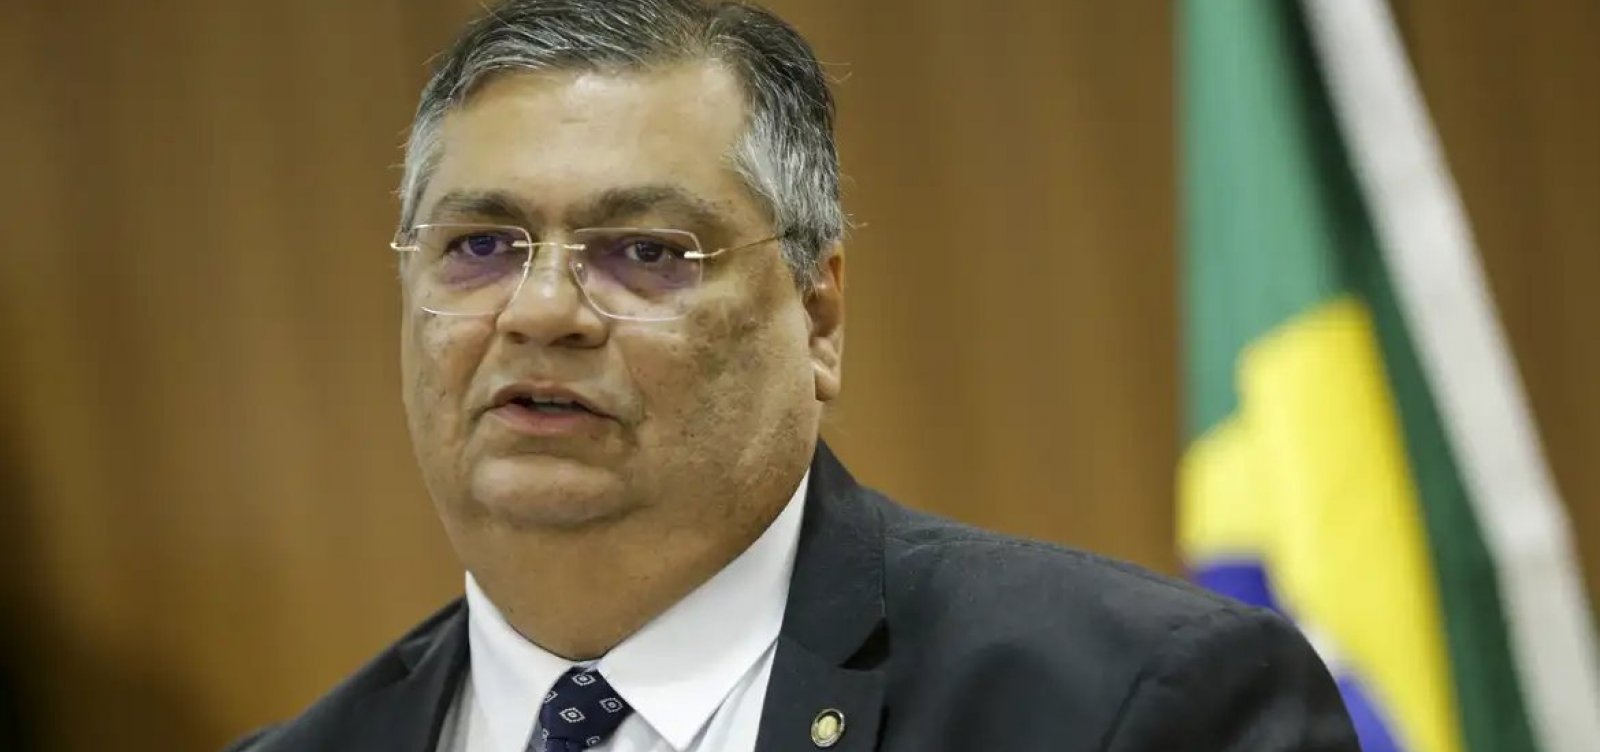 Flávio Dino será empossado como ministro do STF nesta quinta-feira 